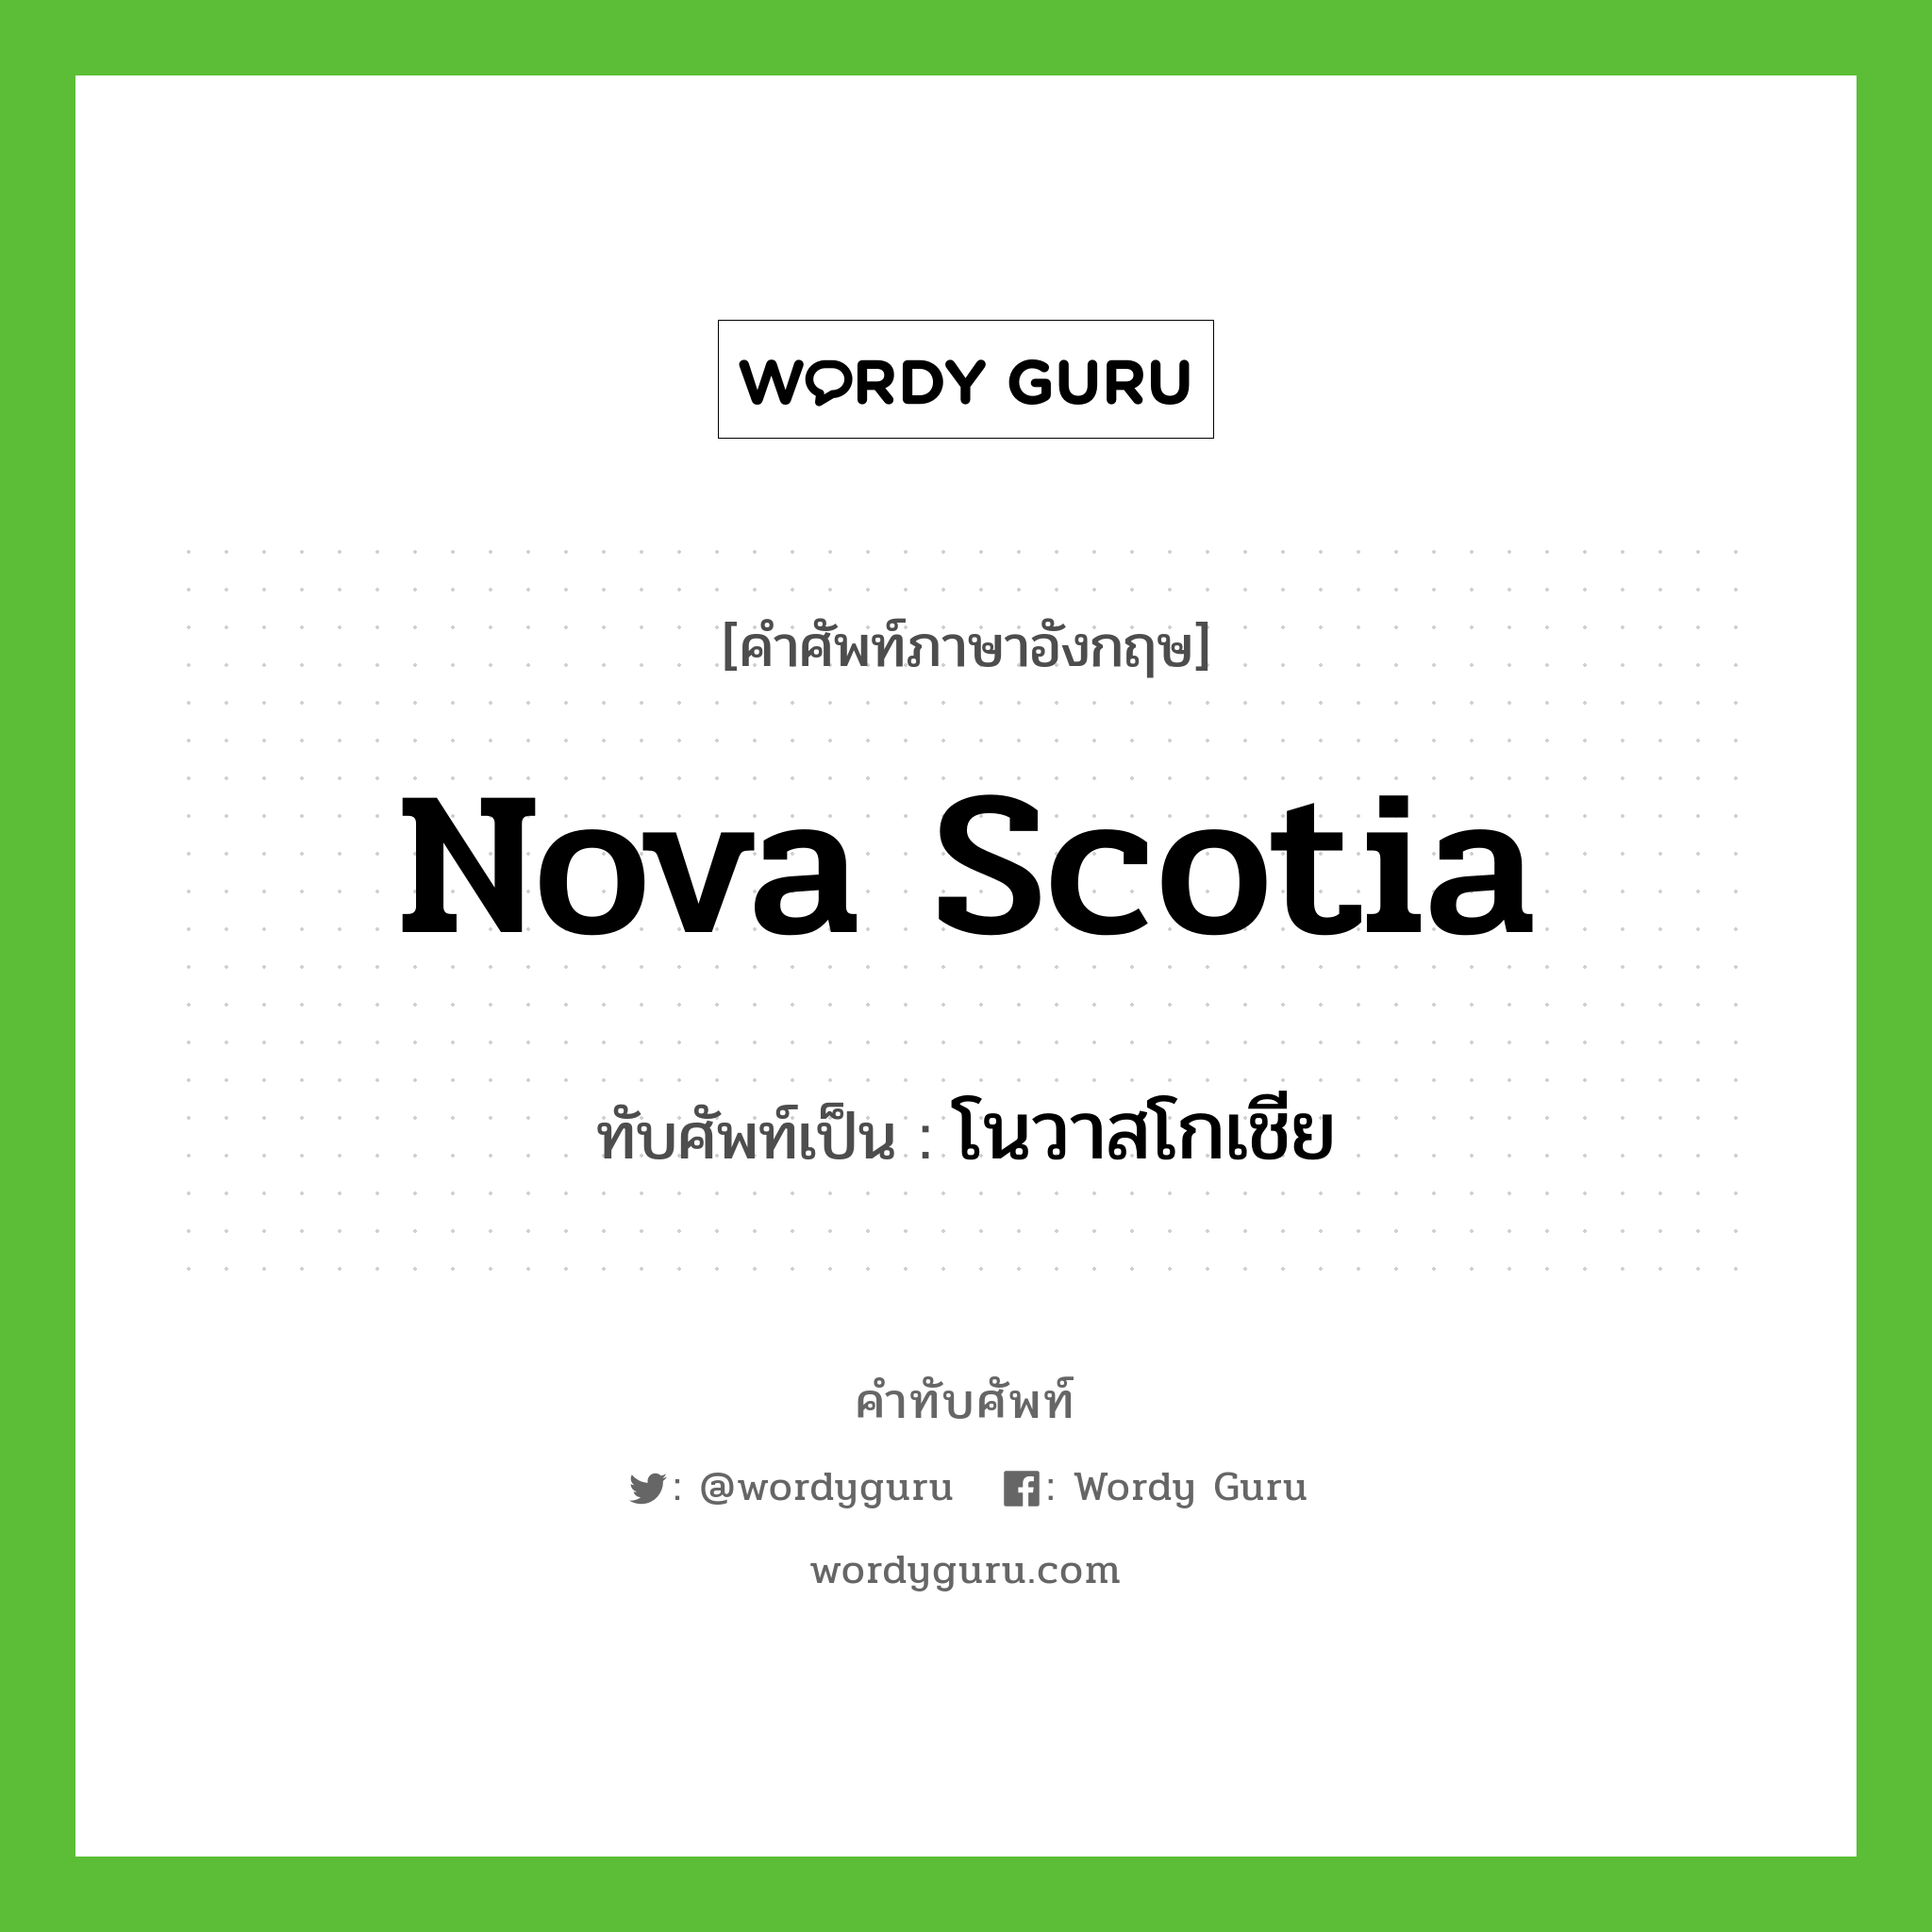 Nova Scotia เขียนเป็นคำไทยว่าอะไร?, คำศัพท์ภาษาอังกฤษ Nova Scotia ทับศัพท์เป็น โนวาสโกเชีย